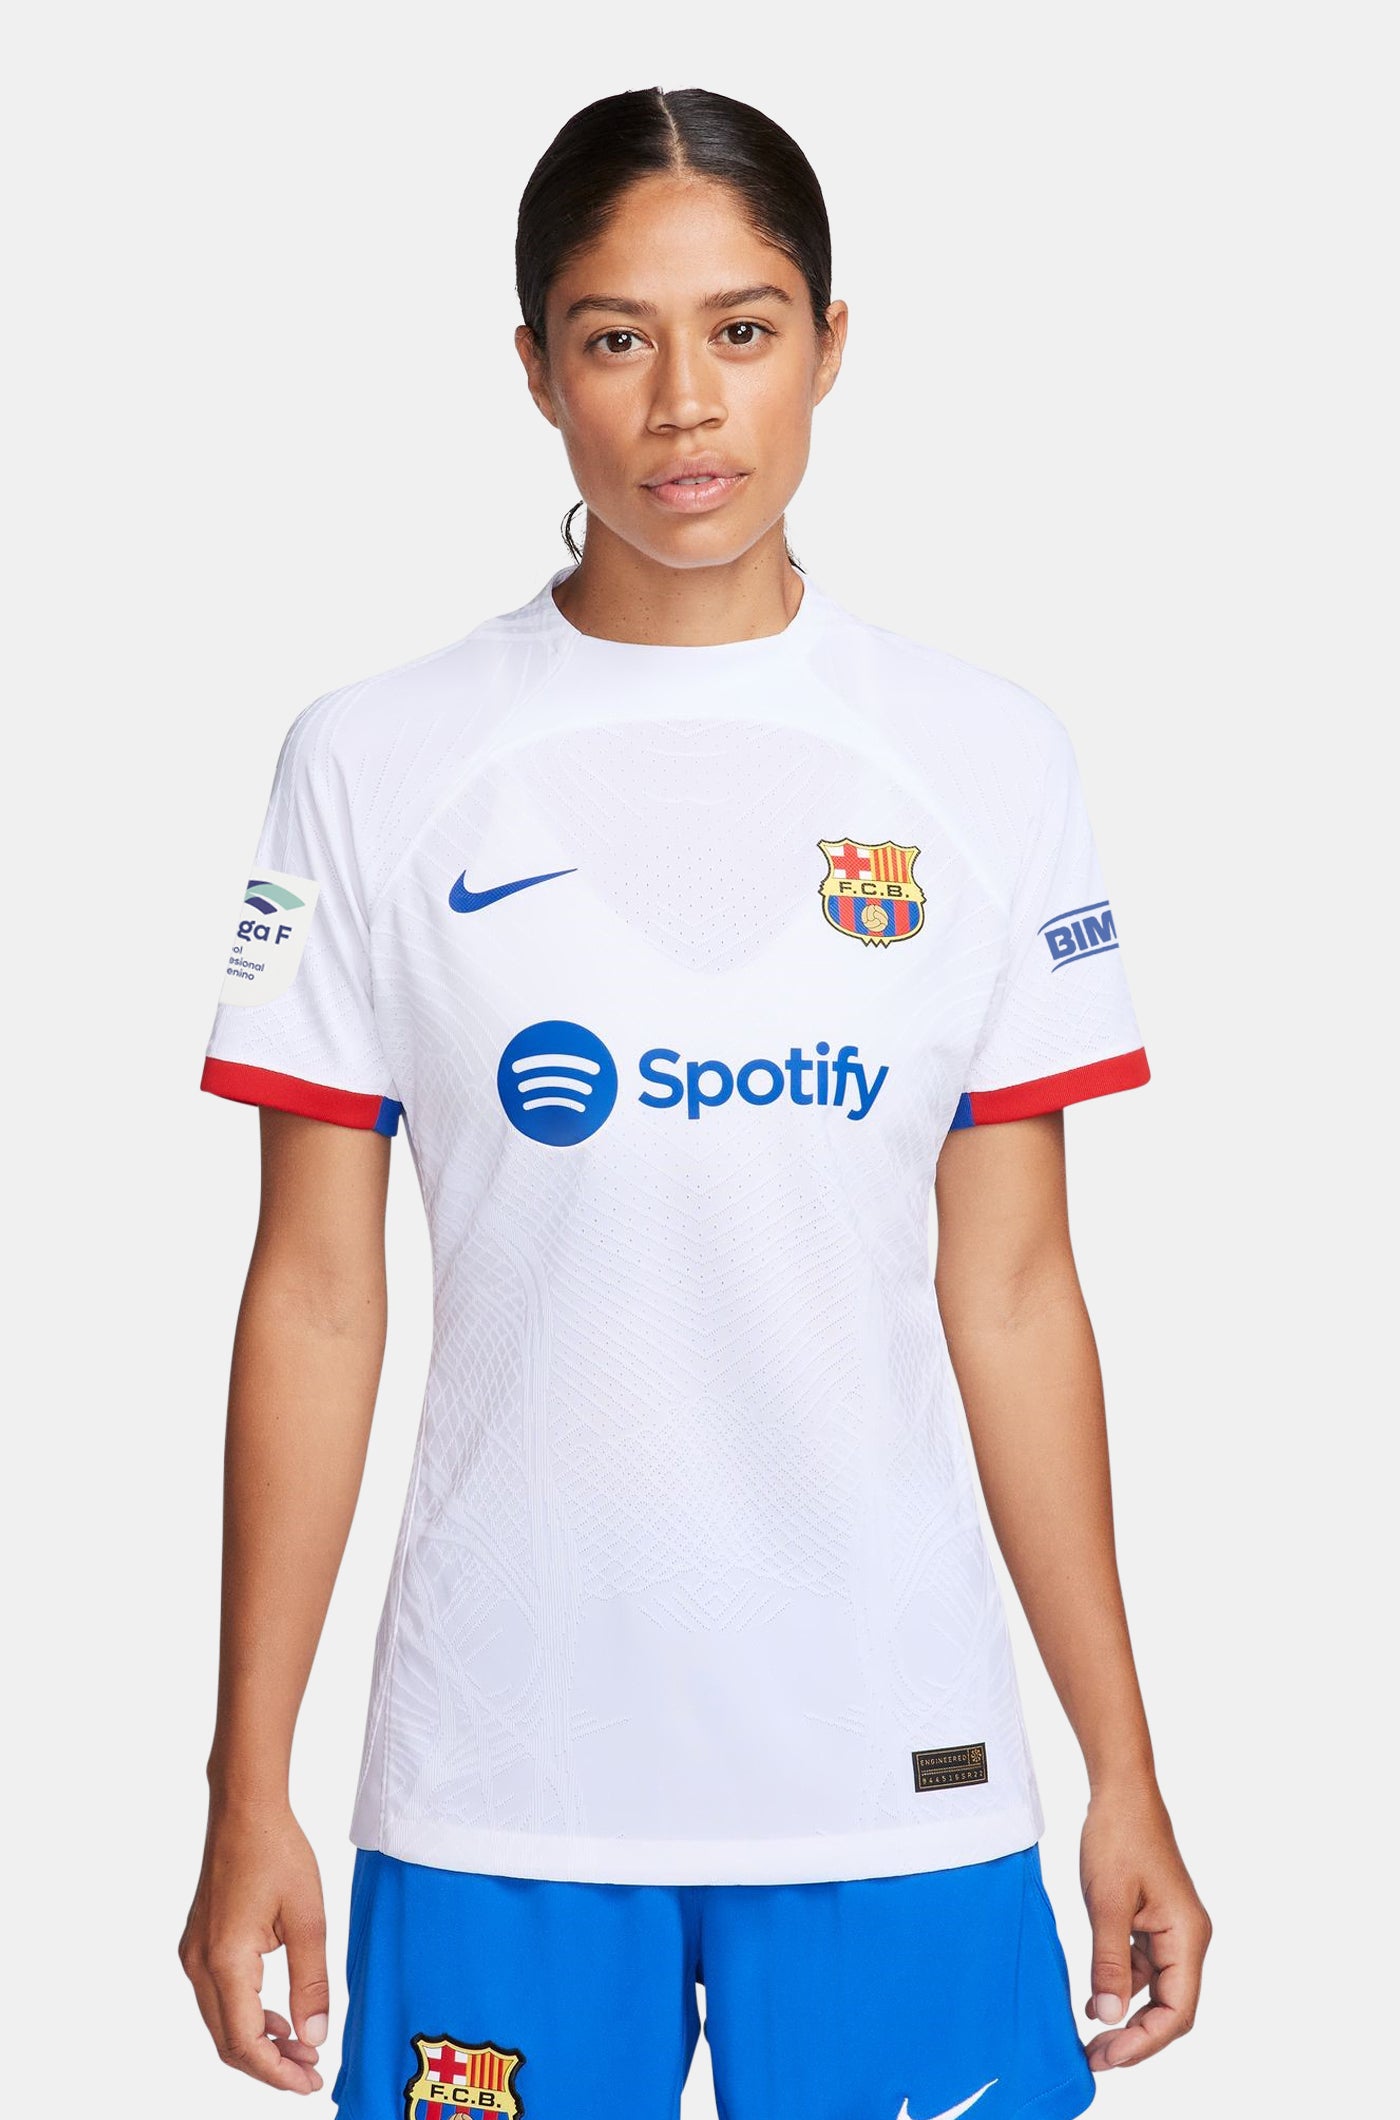 Match Day – Barça Official Store Spotify Camp Nou